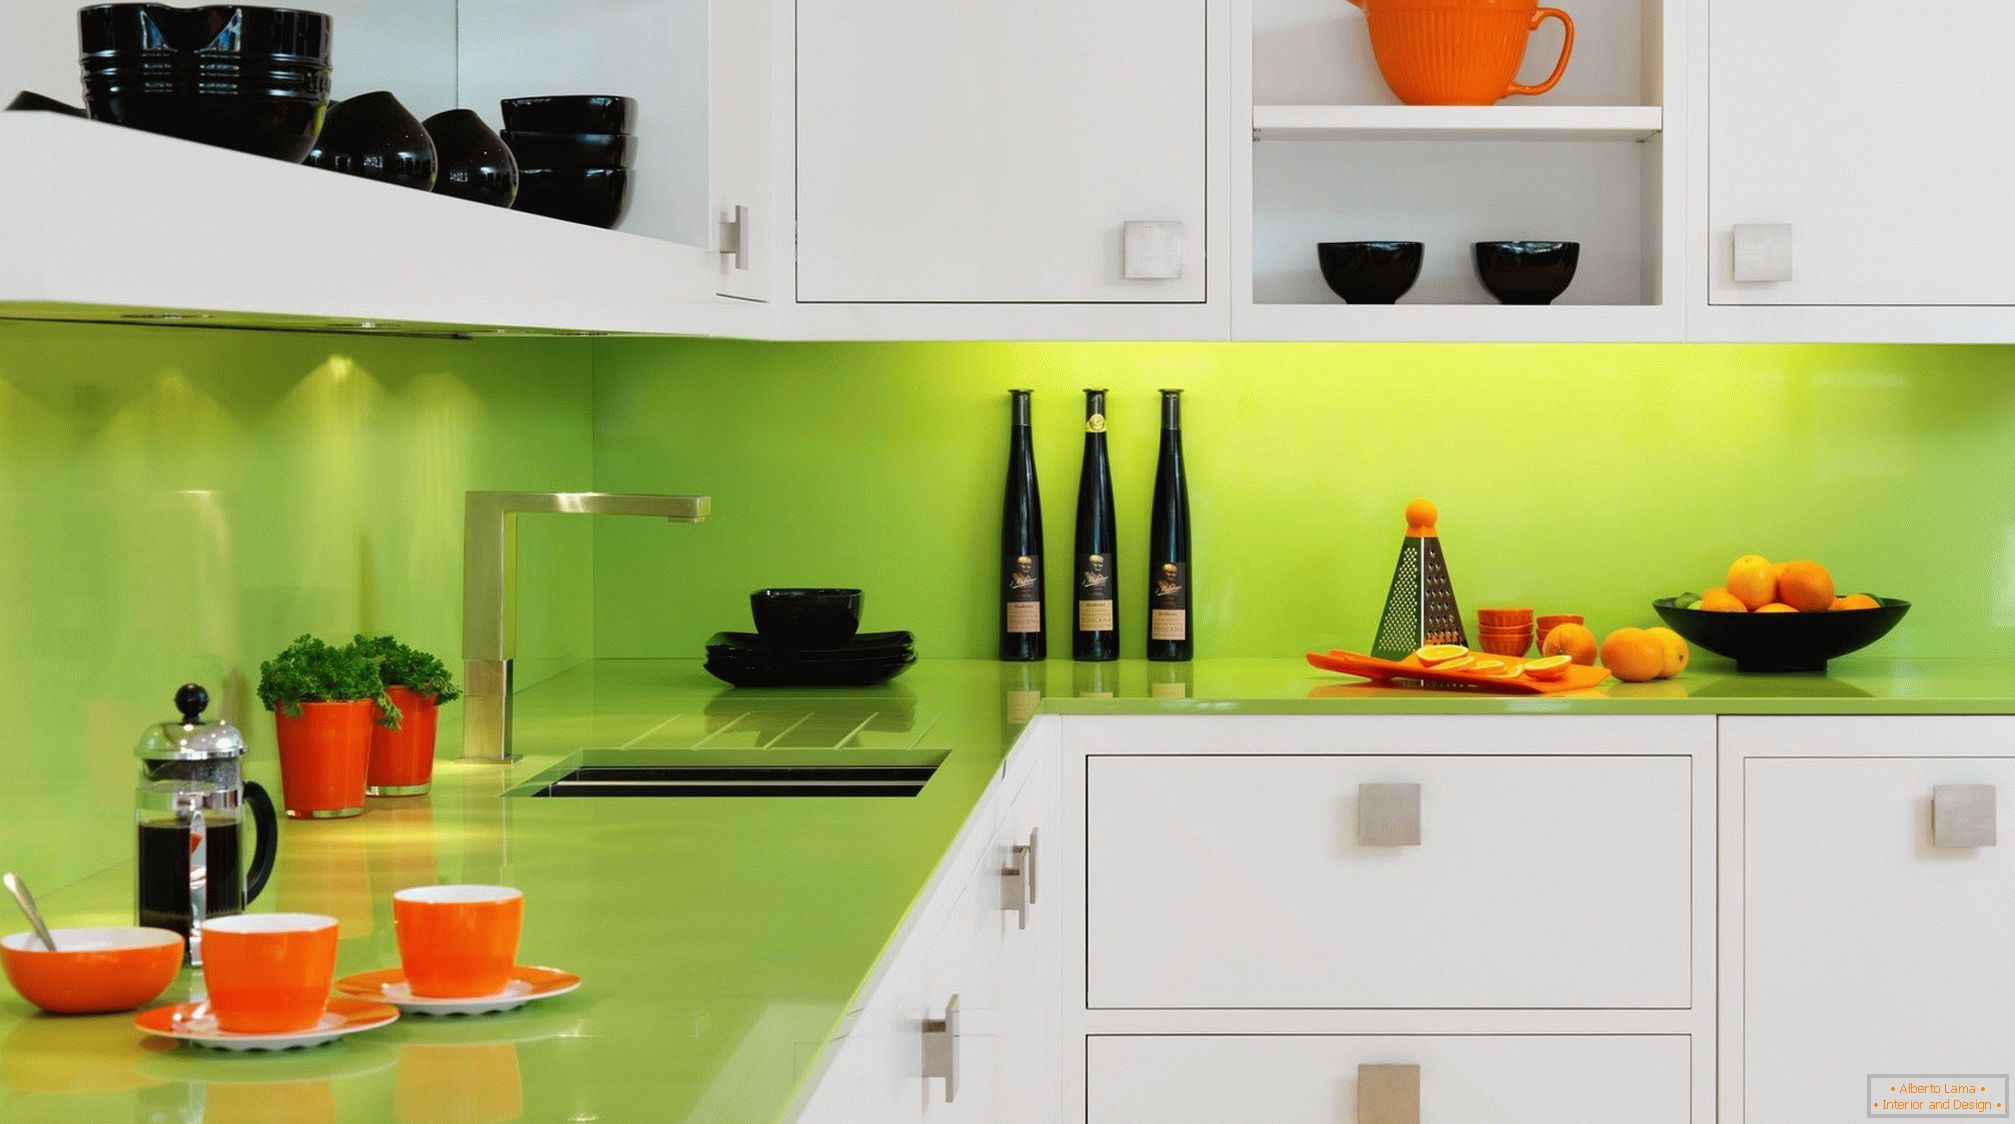 Platos naranja y negro en una cocina de color blanco y verde